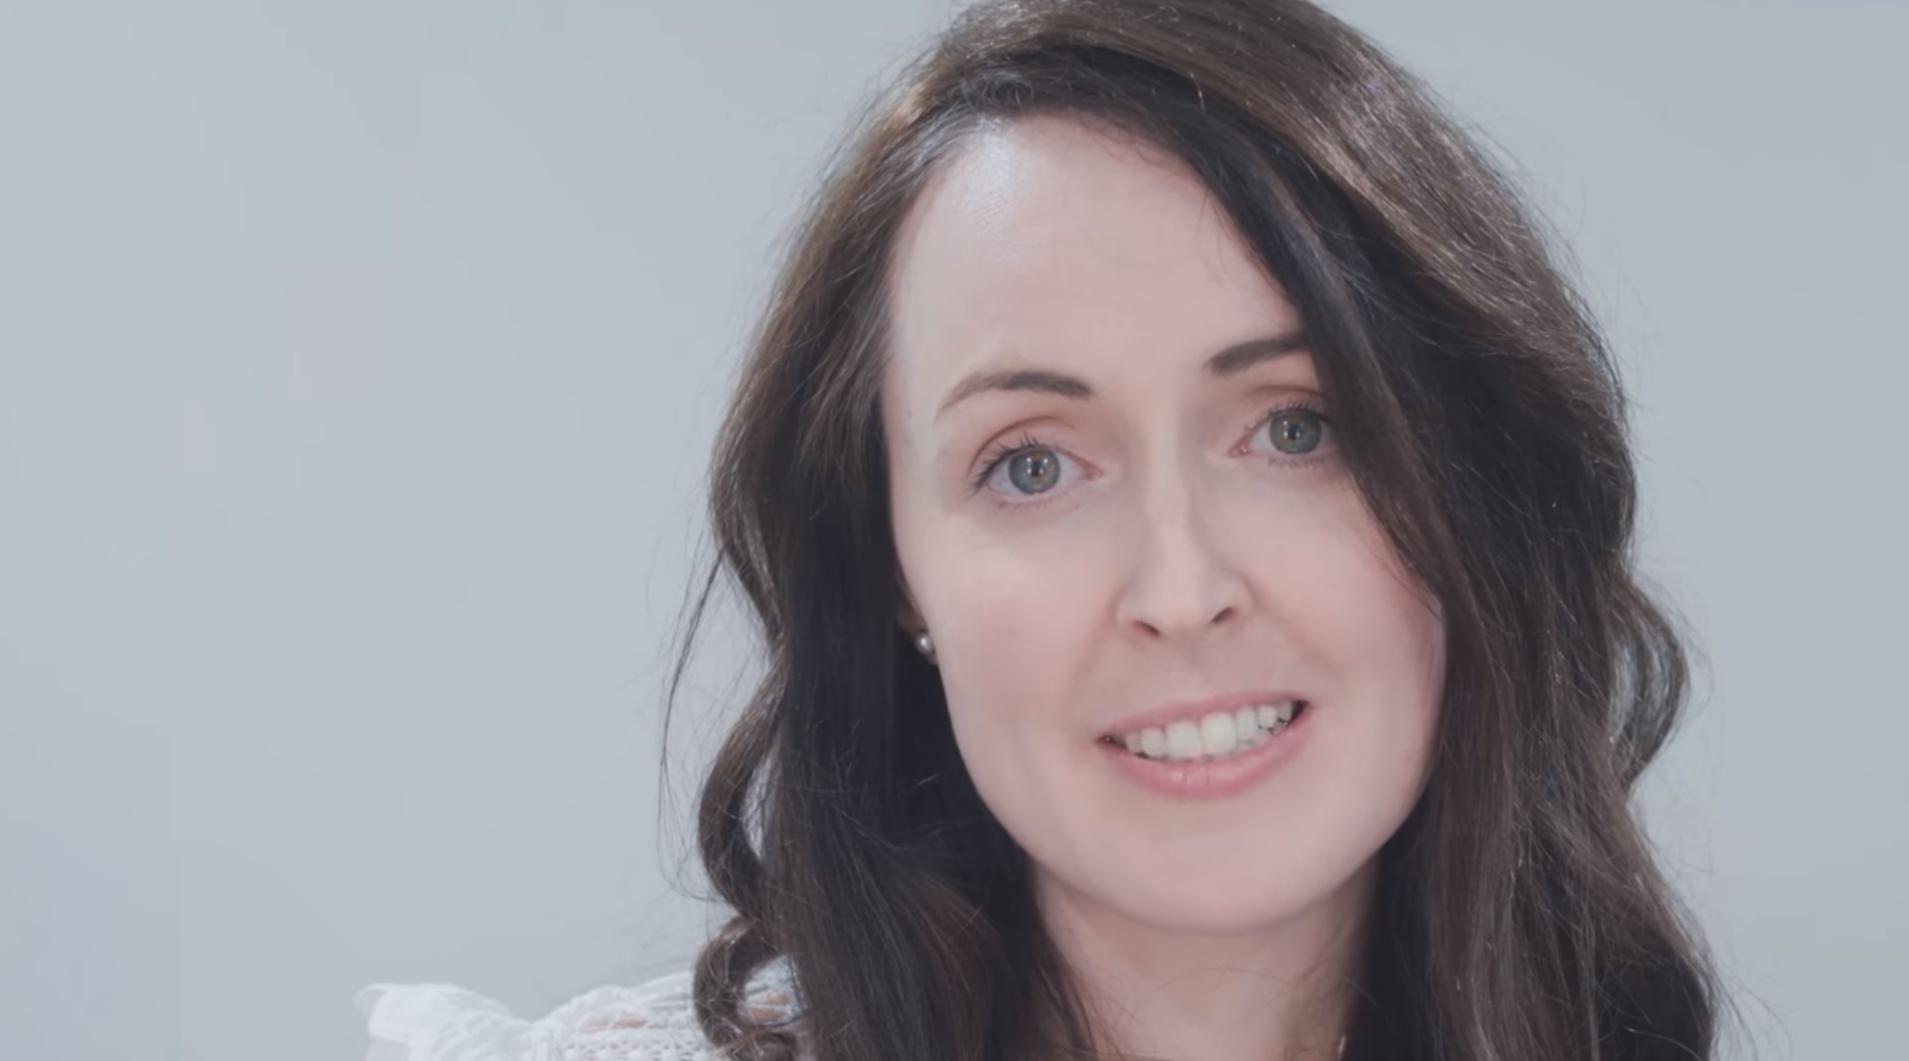 Ierse pro-lifer legt uit waarom de Nederlandse abortuspraktijk geen navolging verdient